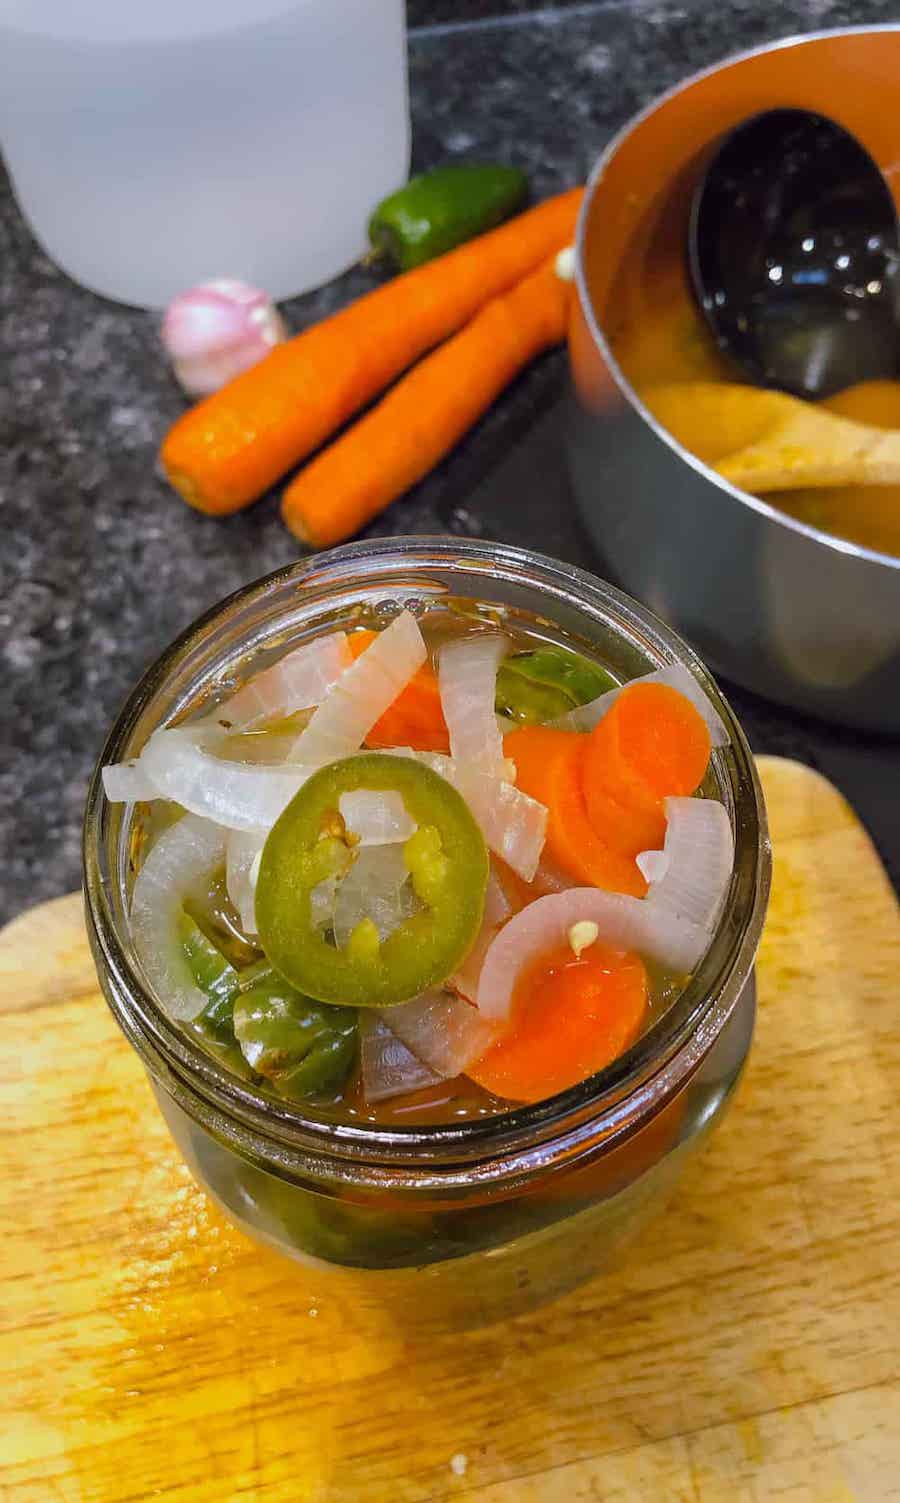 ladling hot vegetables into jars